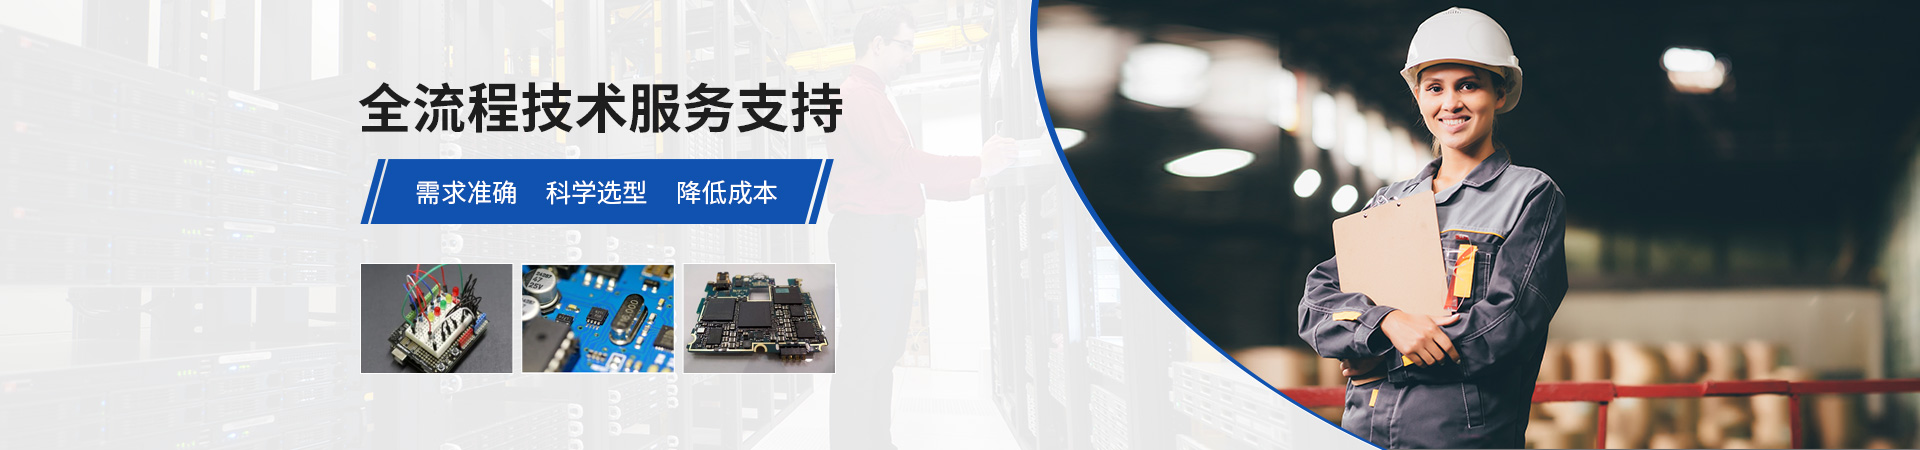 華騰電子全流程技術服務支持需求準確控制成本